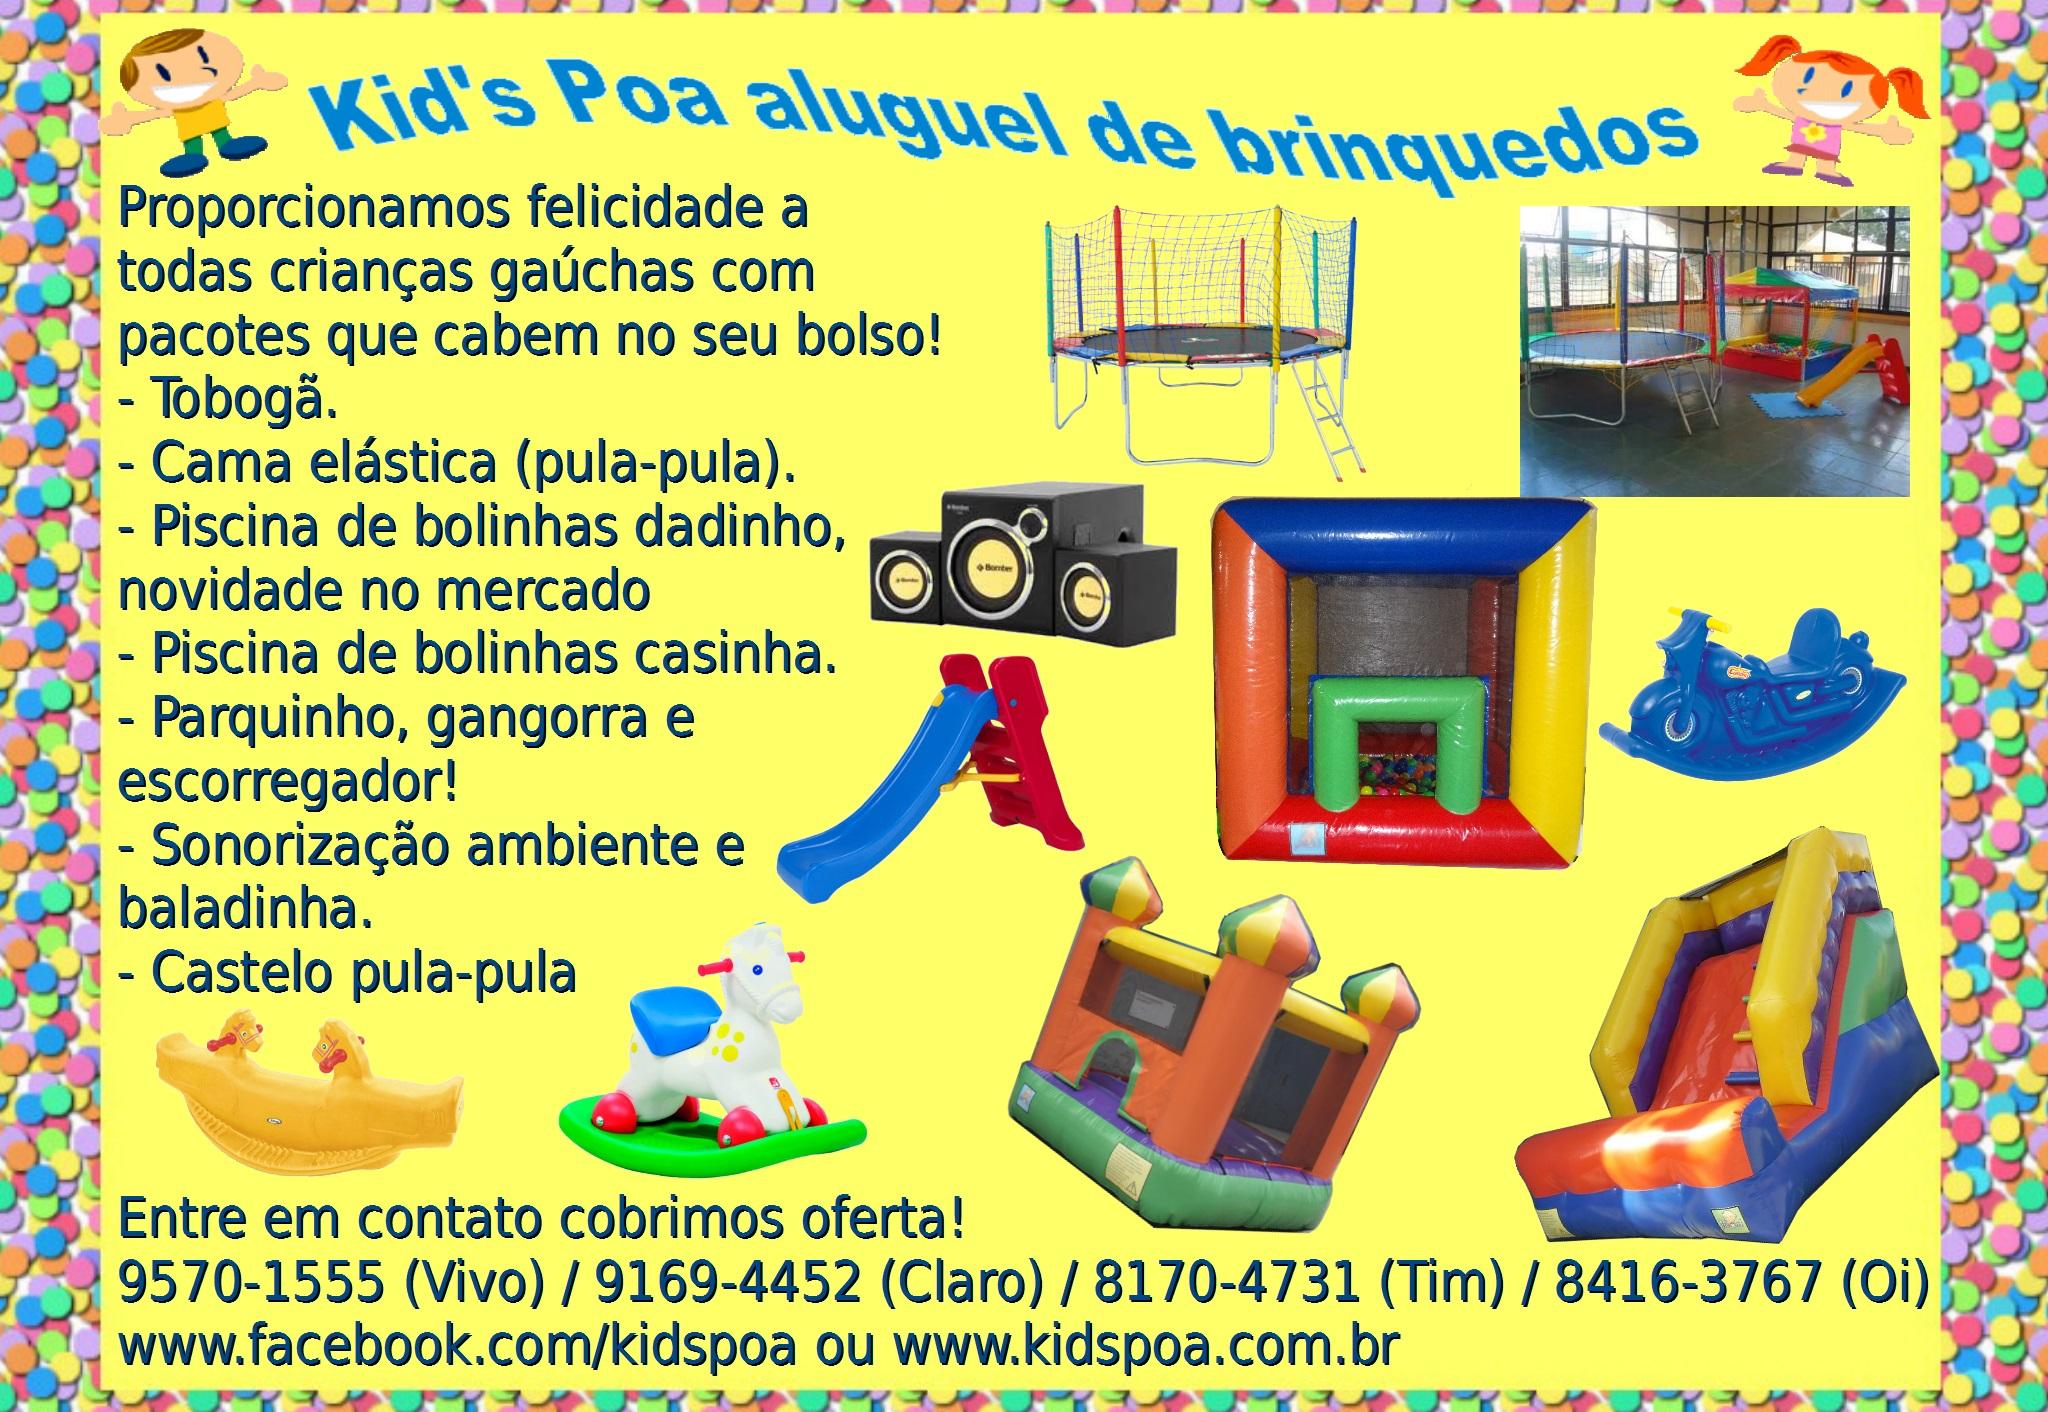 Kidspoa Aluguel de Brinquedos